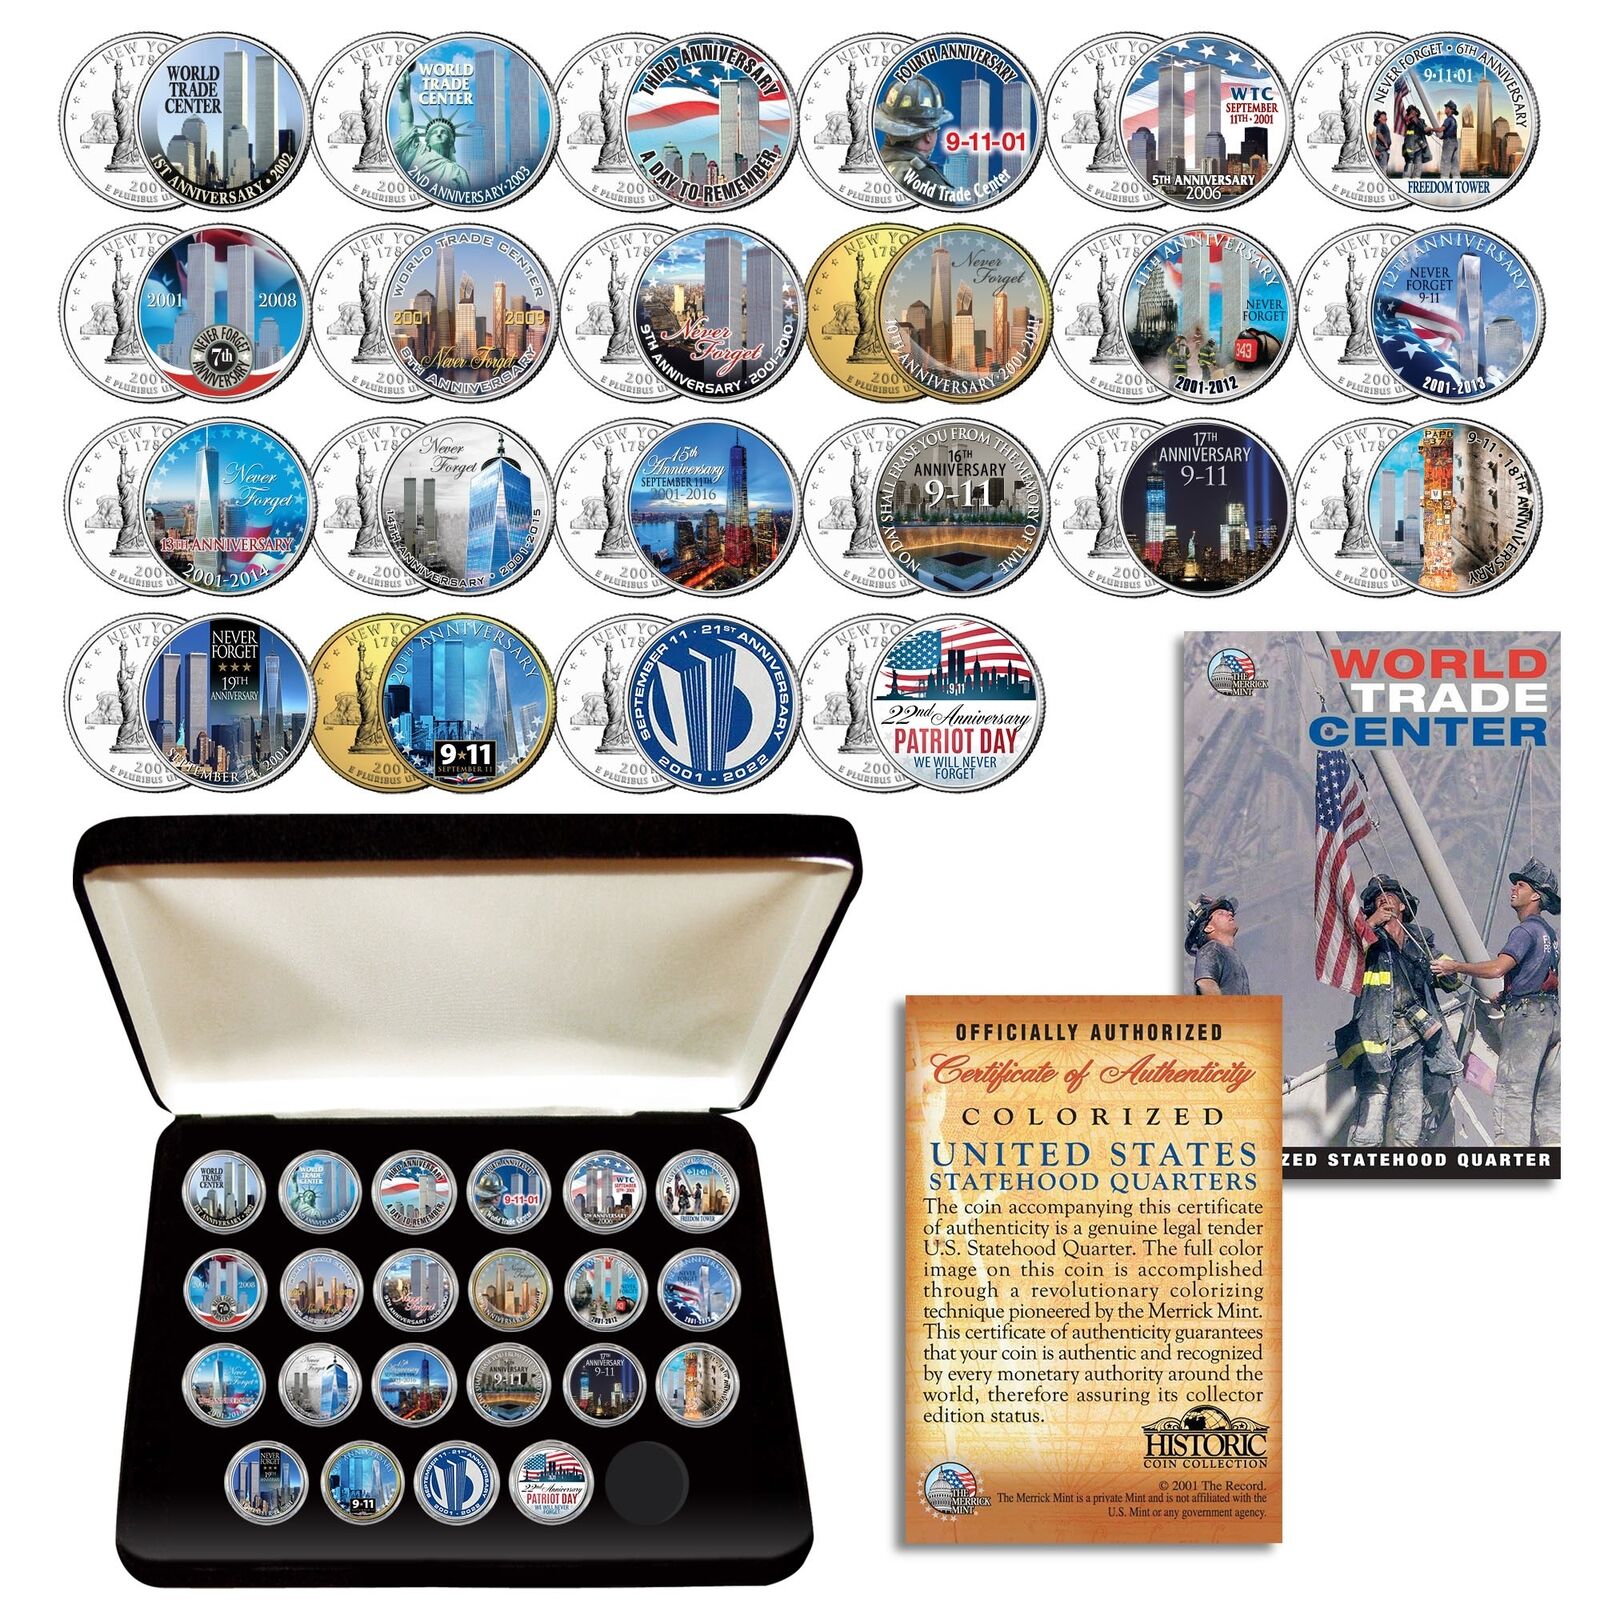 WORLD TRADE CENTER WTC * Anniversary * Complete NY Quarters 22-Coin Set w/ BOX